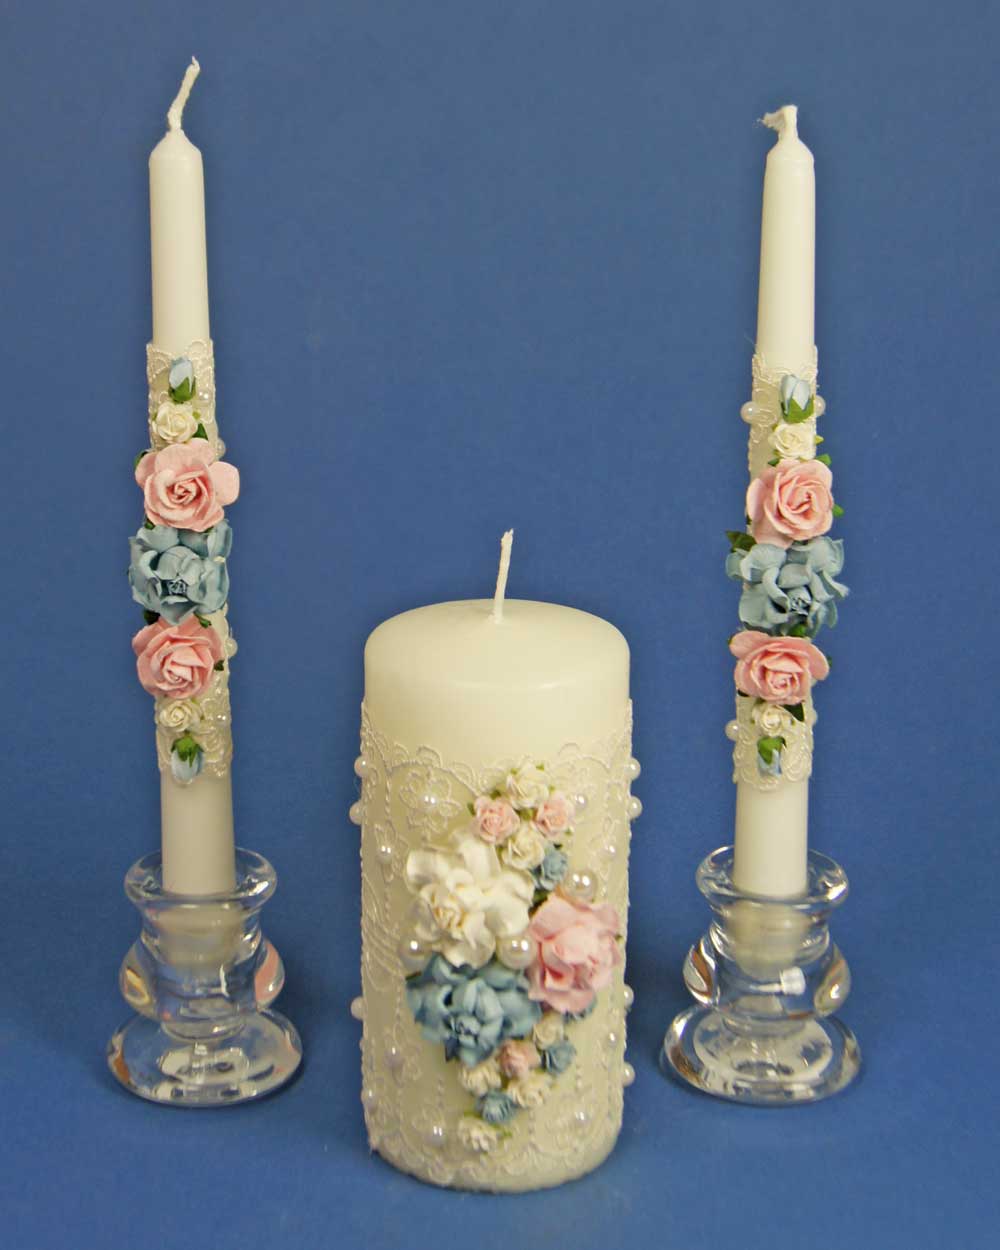 Свадебные свечи – символ счастья семейного очага